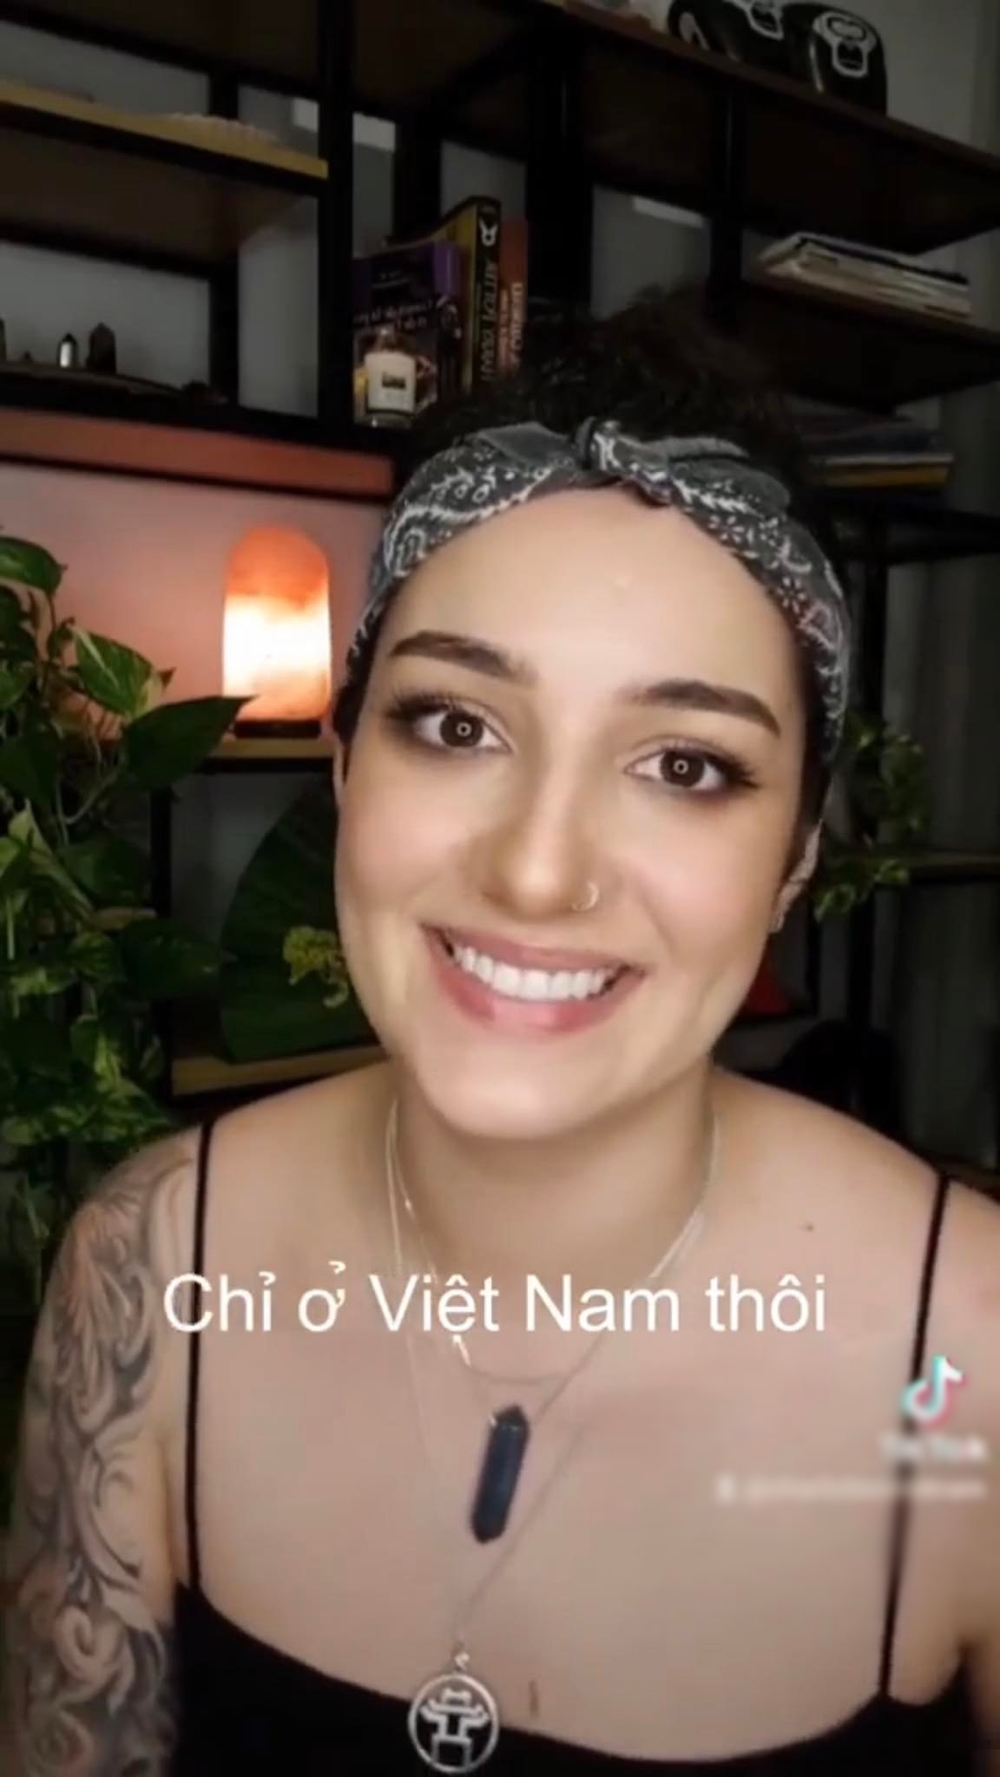  
Lời khẳng định chỉ có ở Việt Nam mới nhận được sự giúp đỡ như vậy khiến nhiều người thích thú. (Ảnh: Chụp màn hình)